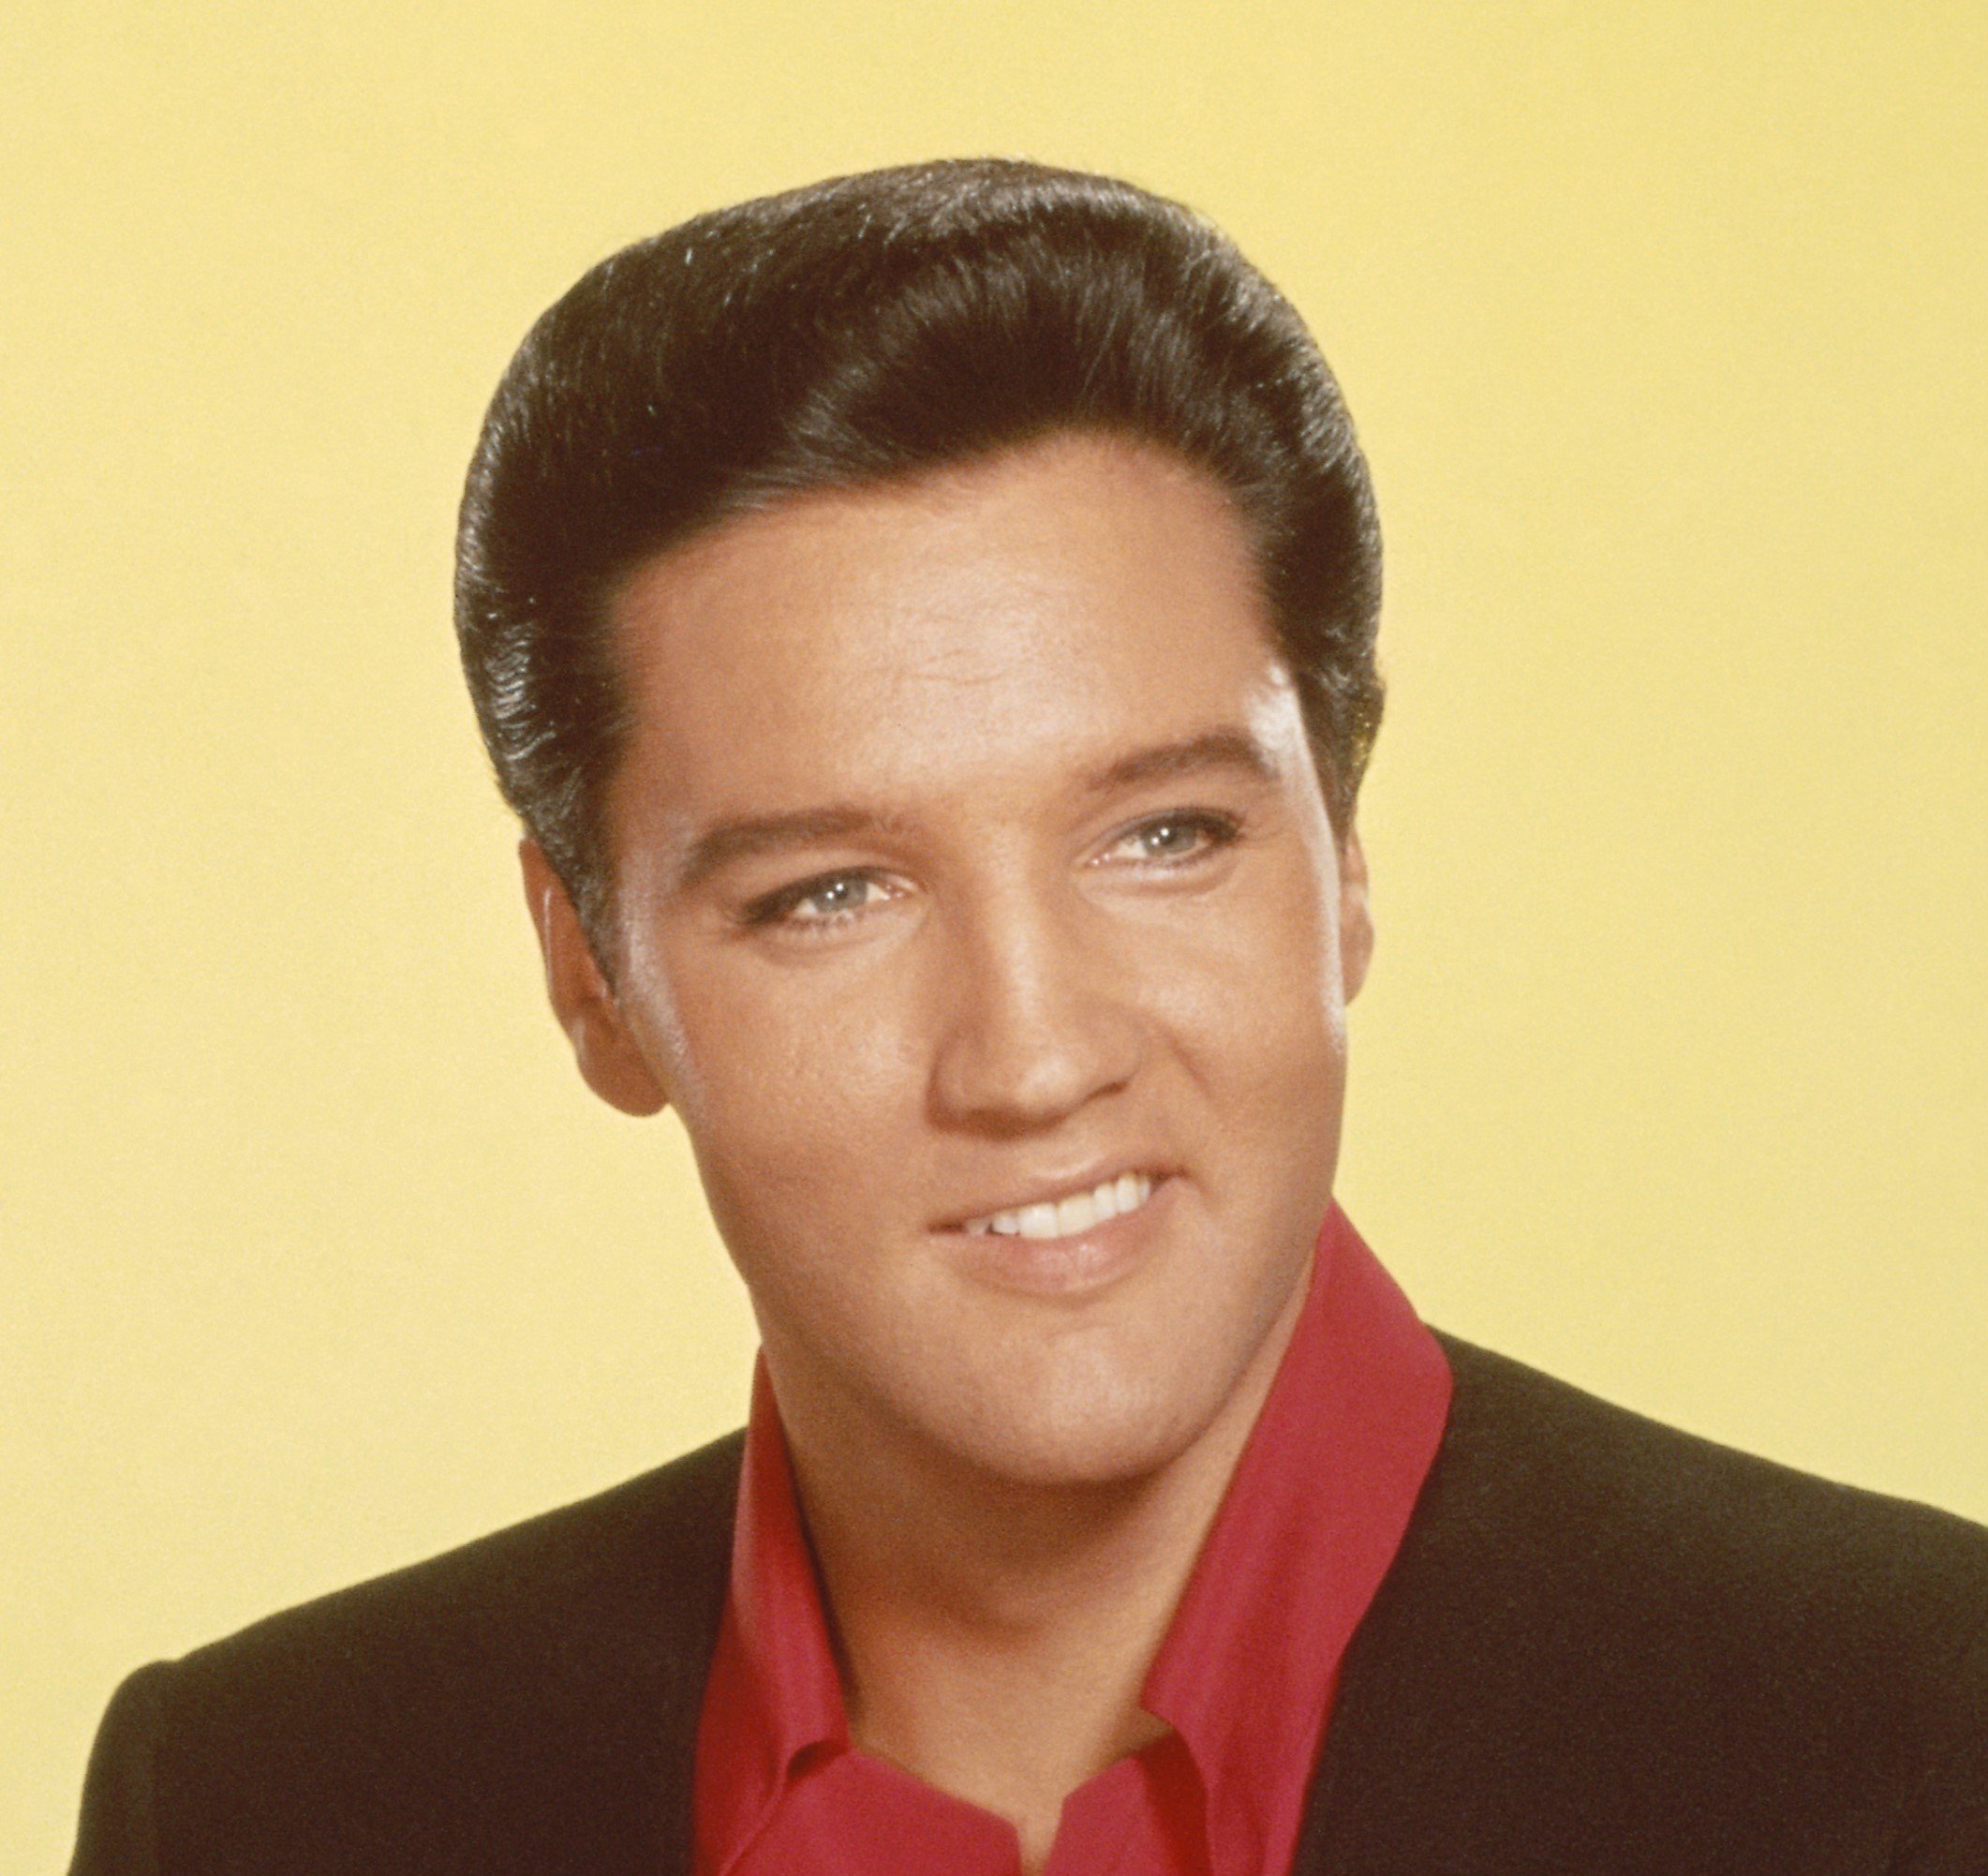 Elvis Presley wearing a suit